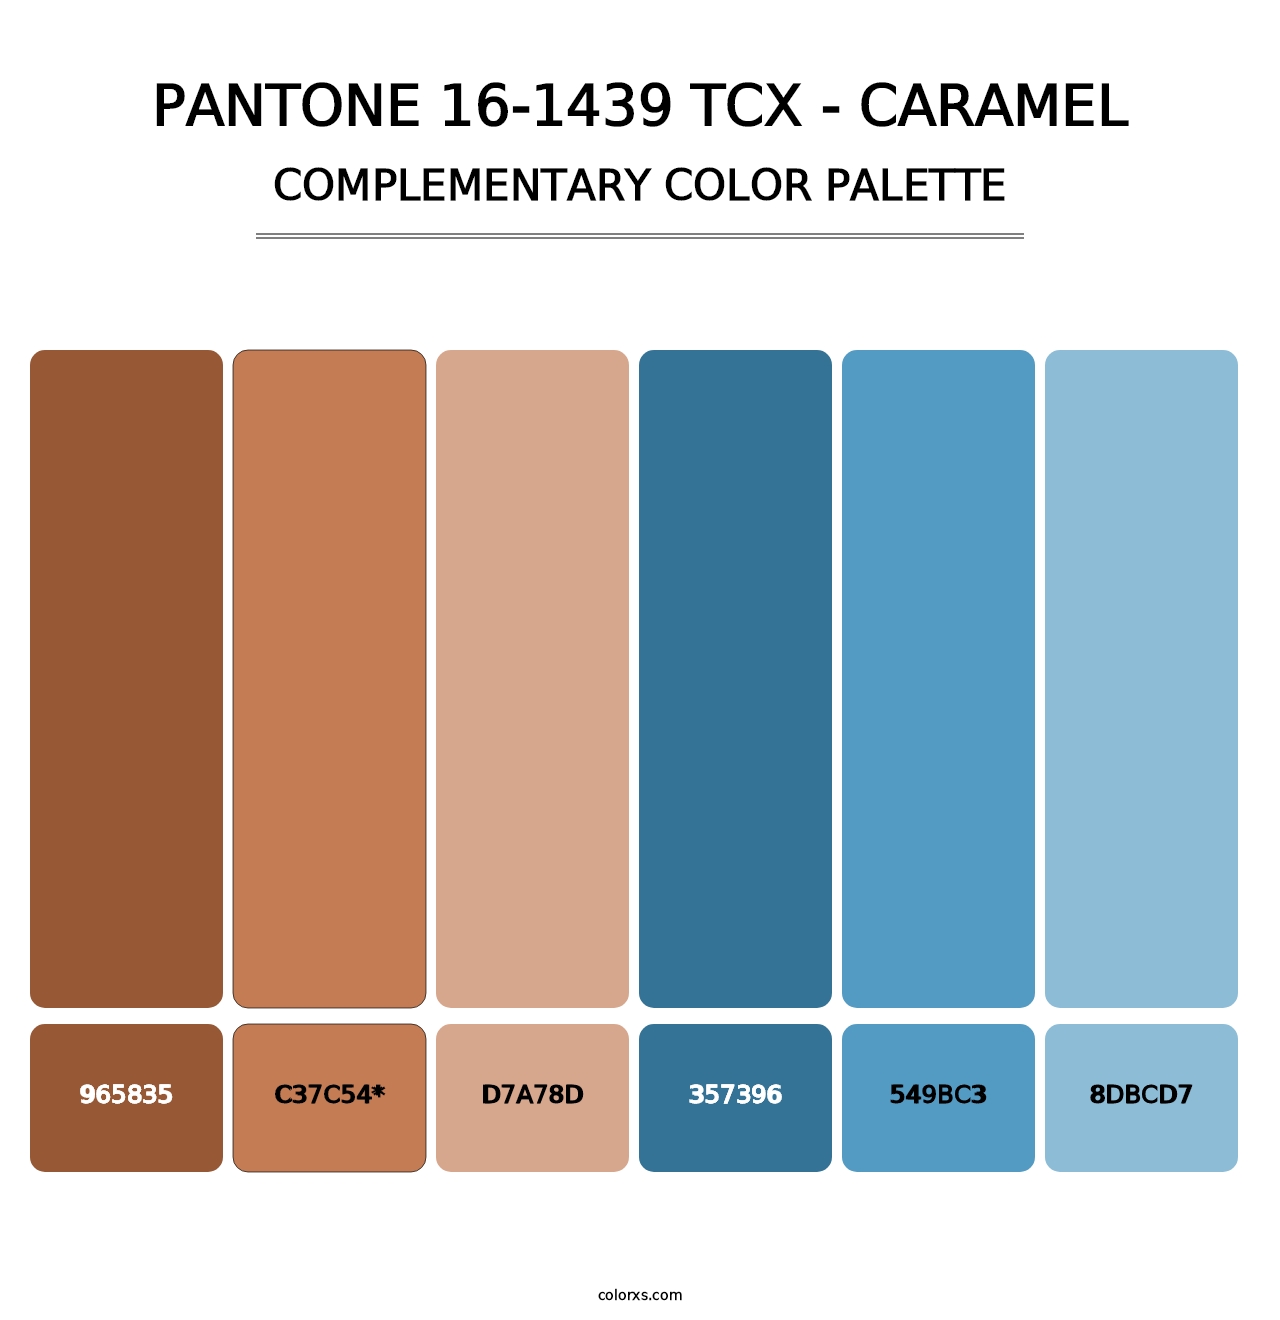 PANTONE 16-1439 TCX - Caramel - Complementary Color Palette